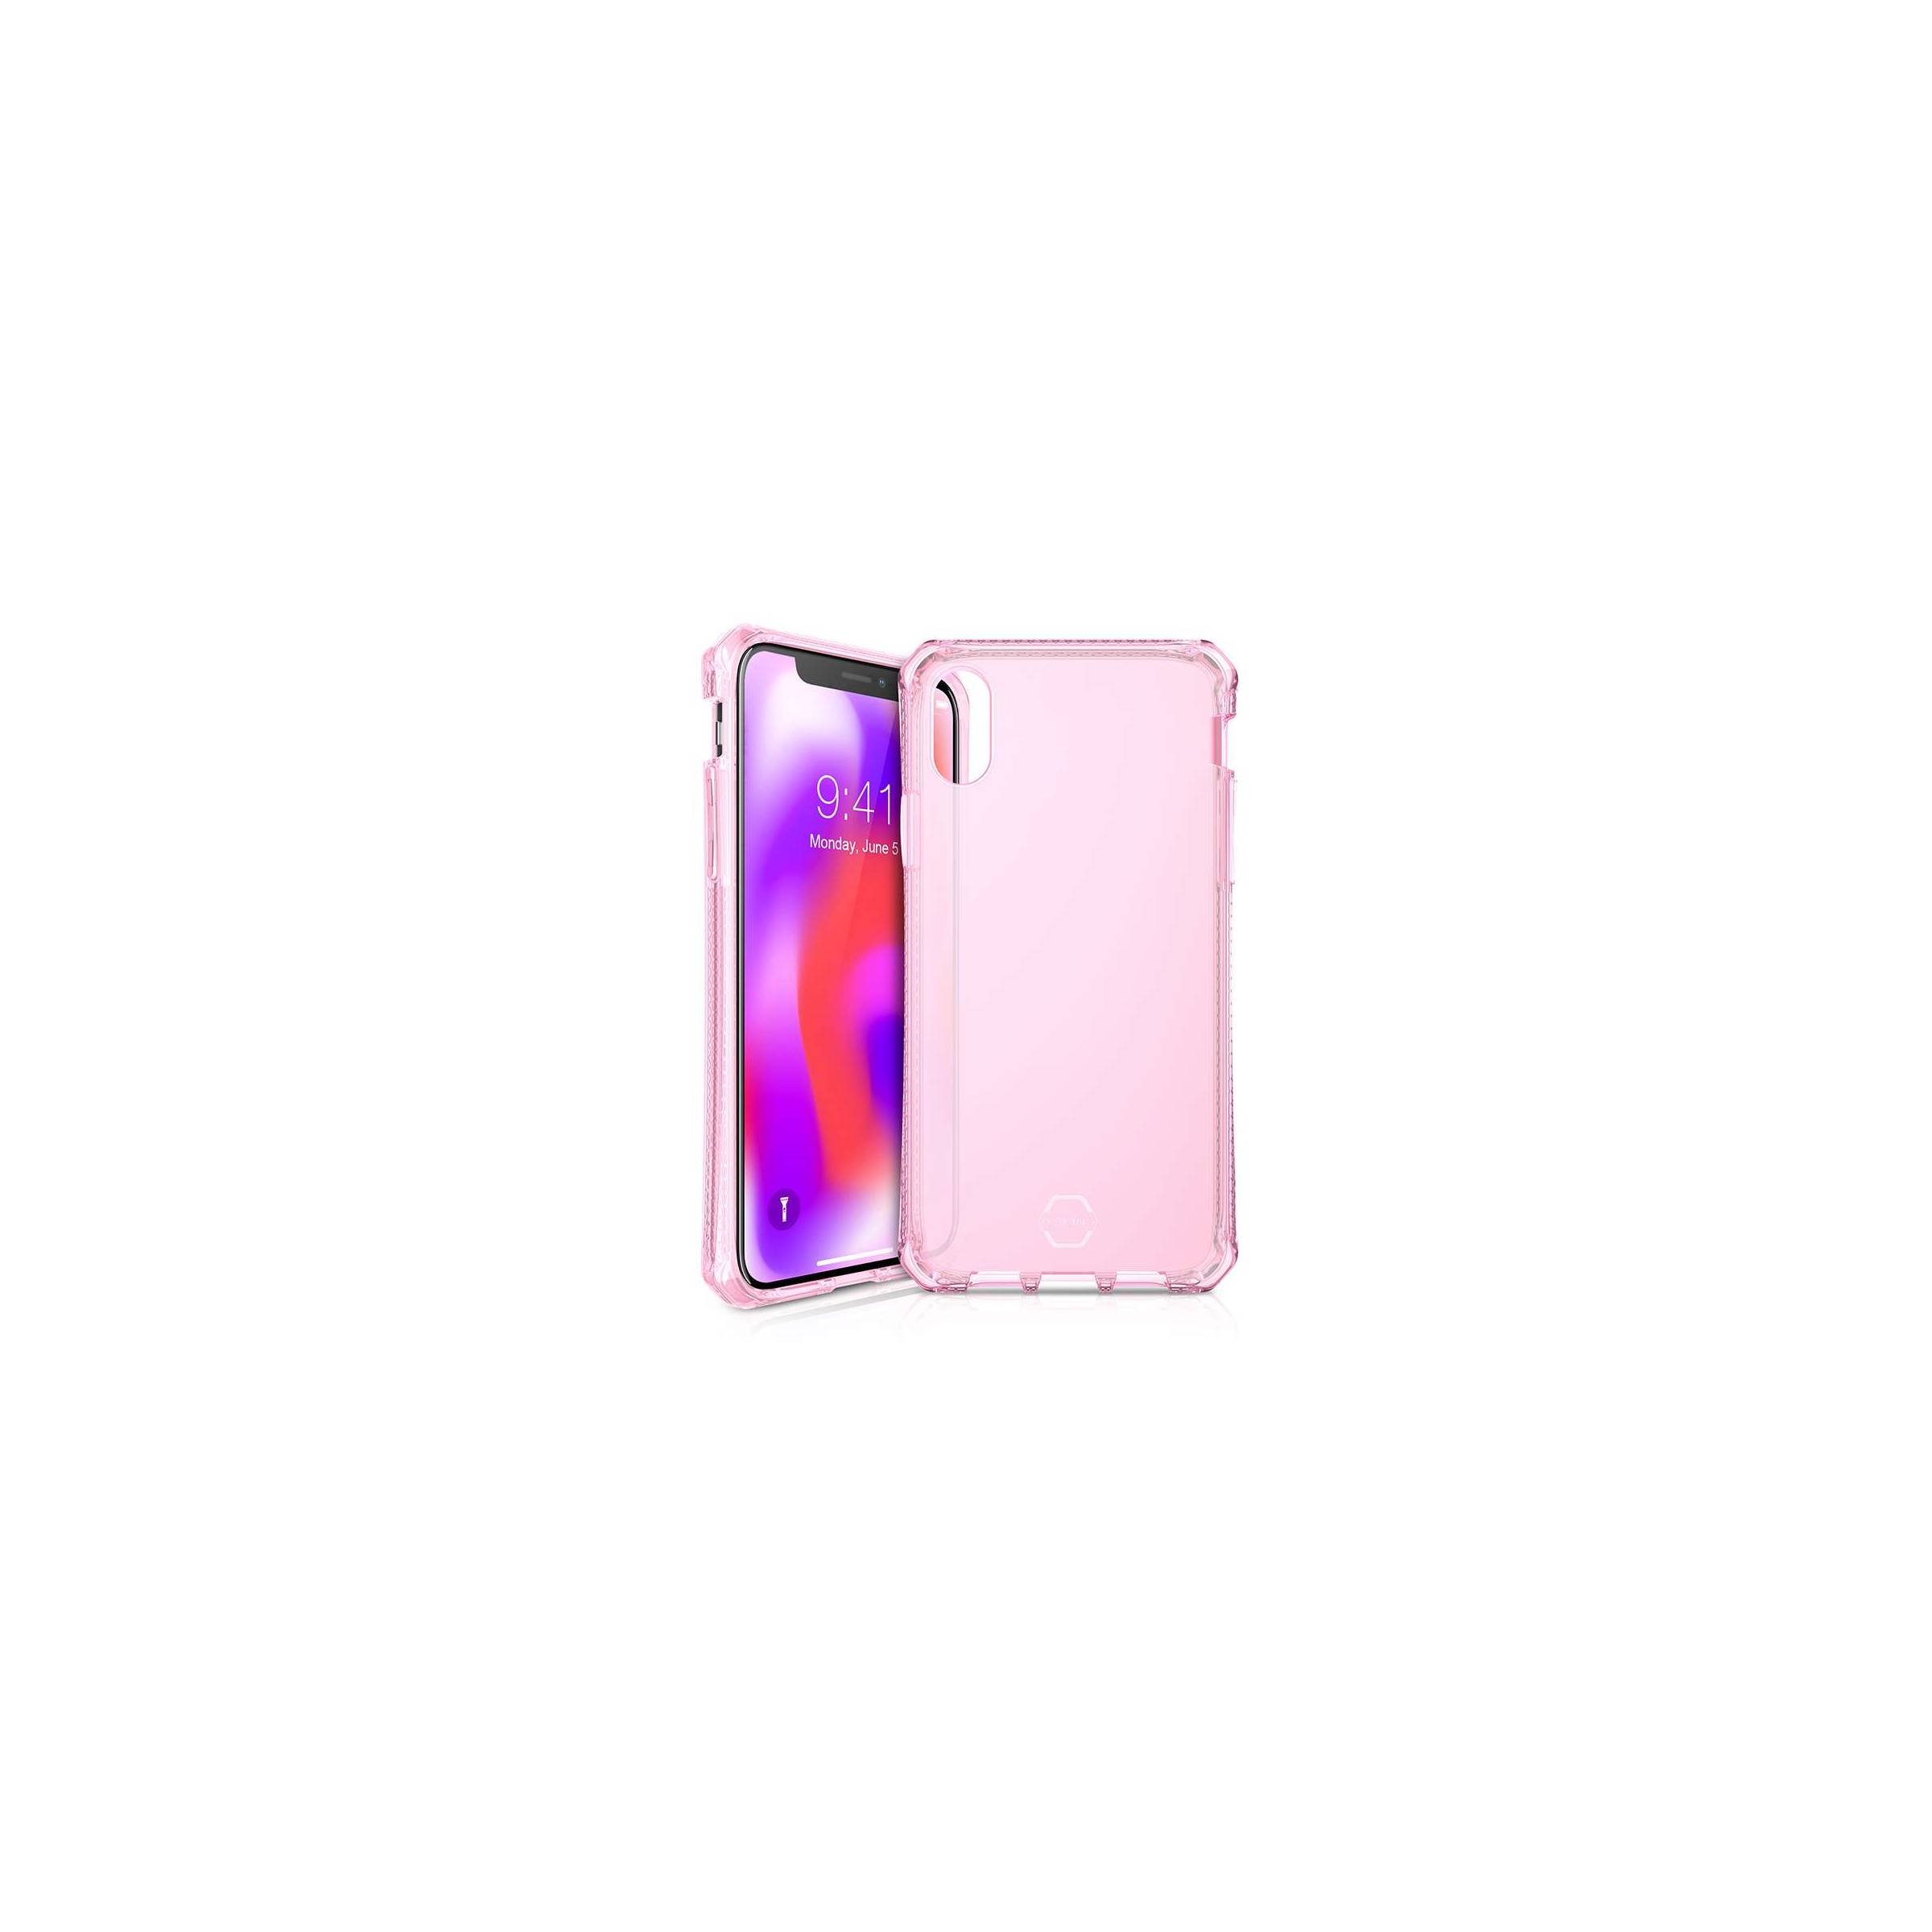 Bilde av Itskins Cover Til Iphone Xs Max Gennemsigtigt Pink